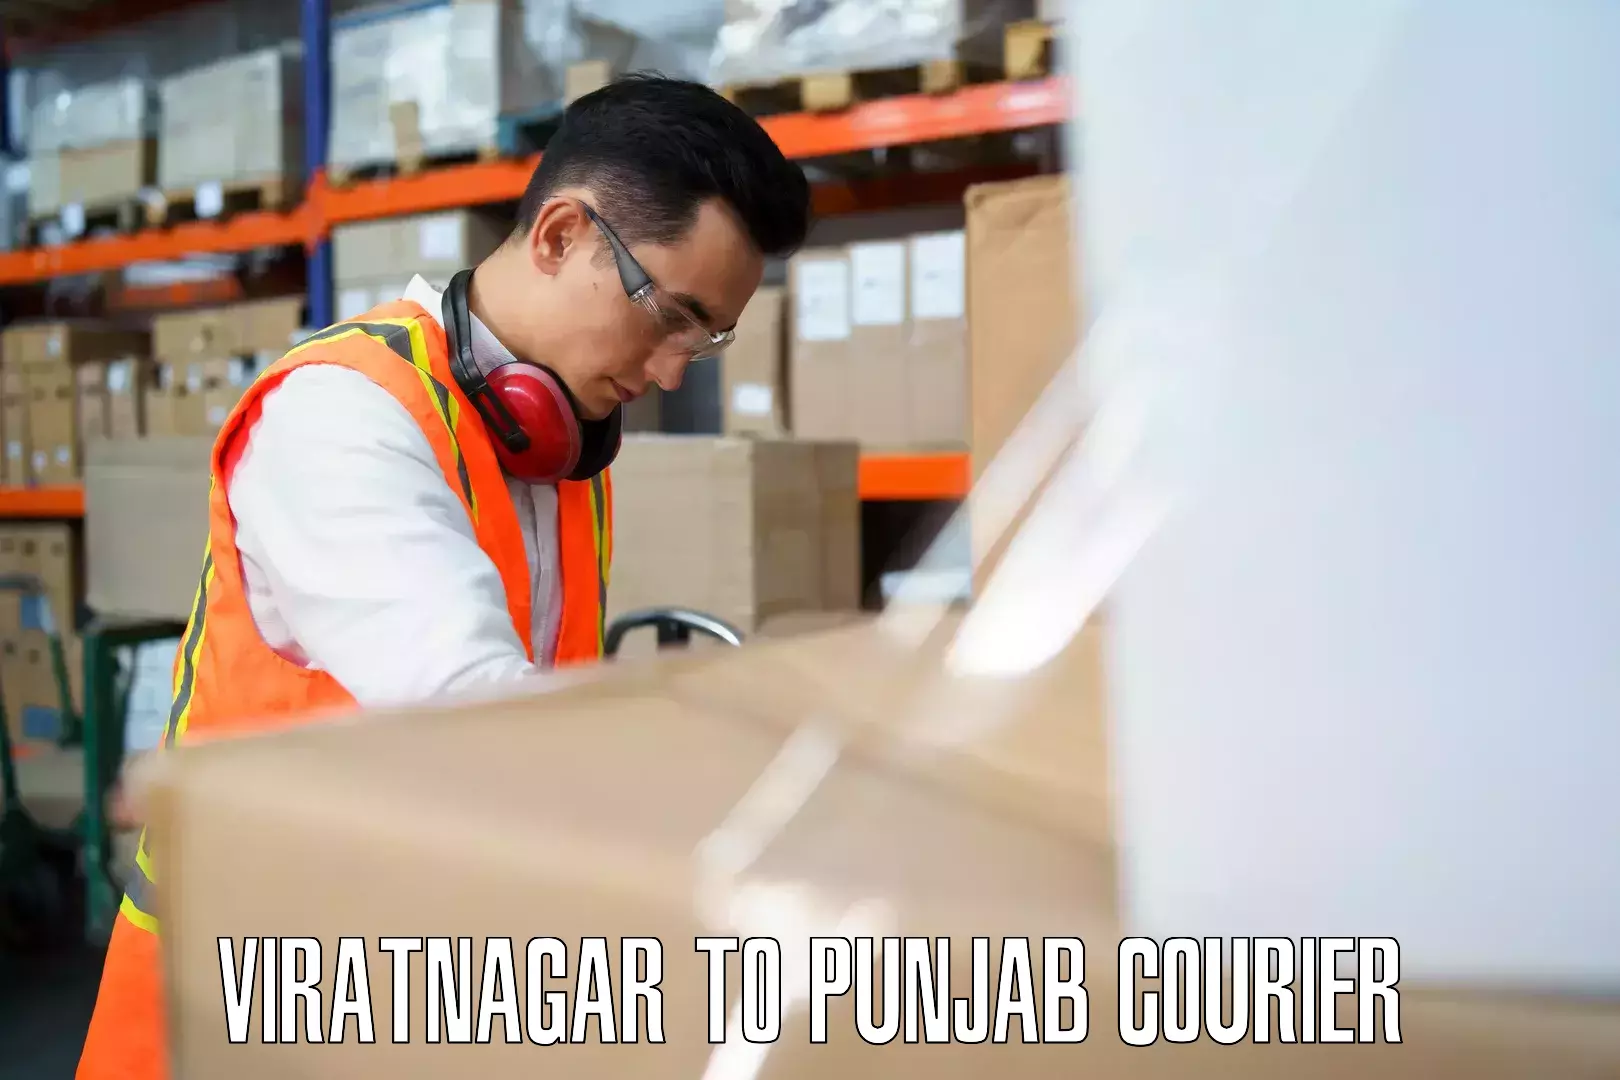 Luggage courier planning Viratnagar to Tarsikka